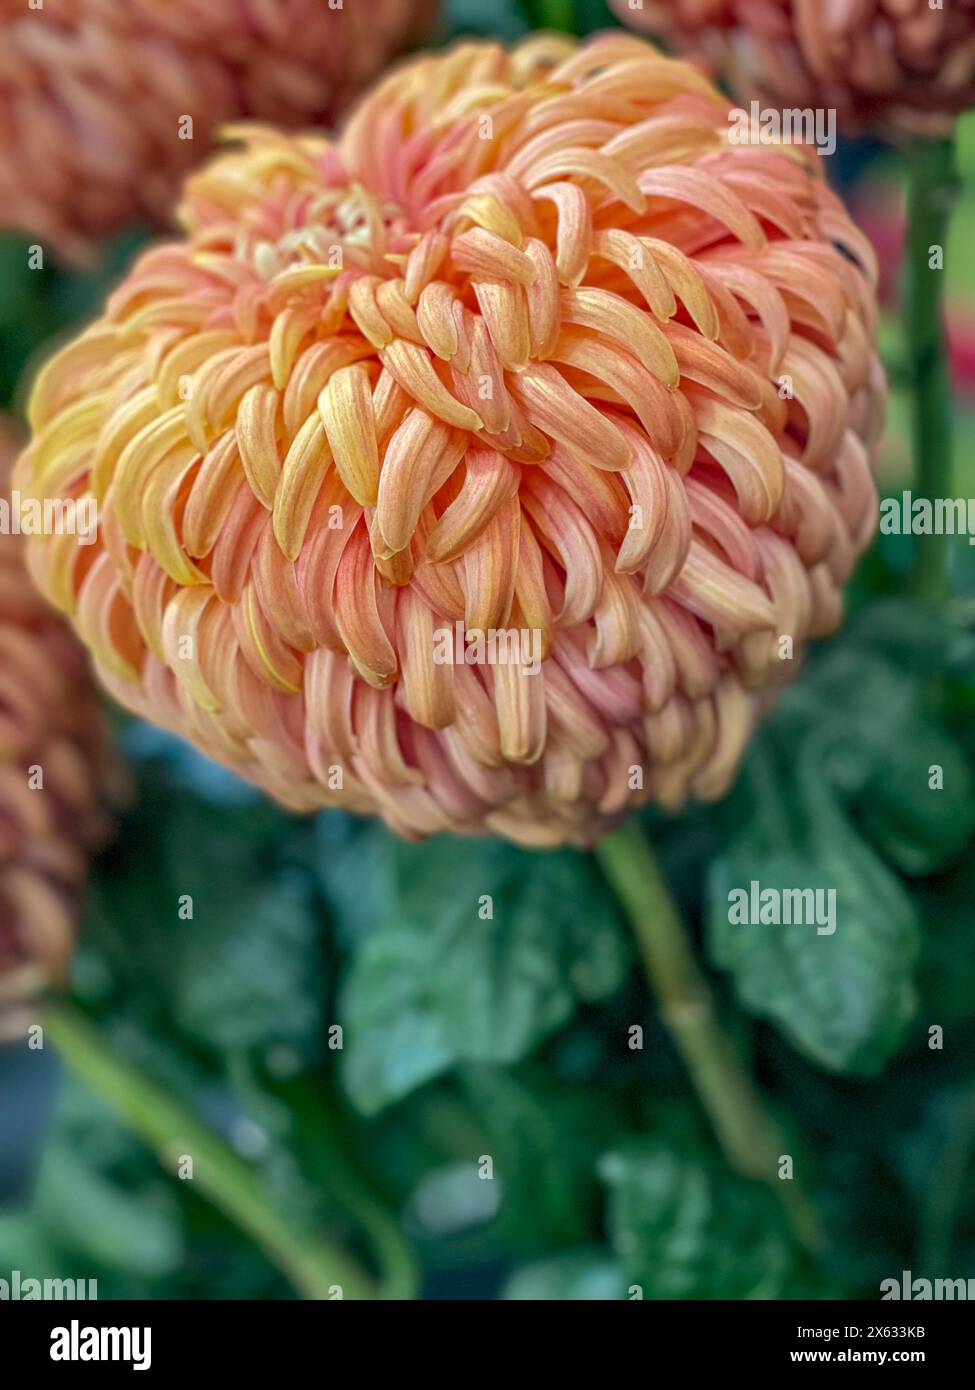 Nahaufnahme einer großen orange-farbenen früh reflektierten Chrysantheme, eine Ausstellung bei einer Blumenausstellung. UK Stockfoto